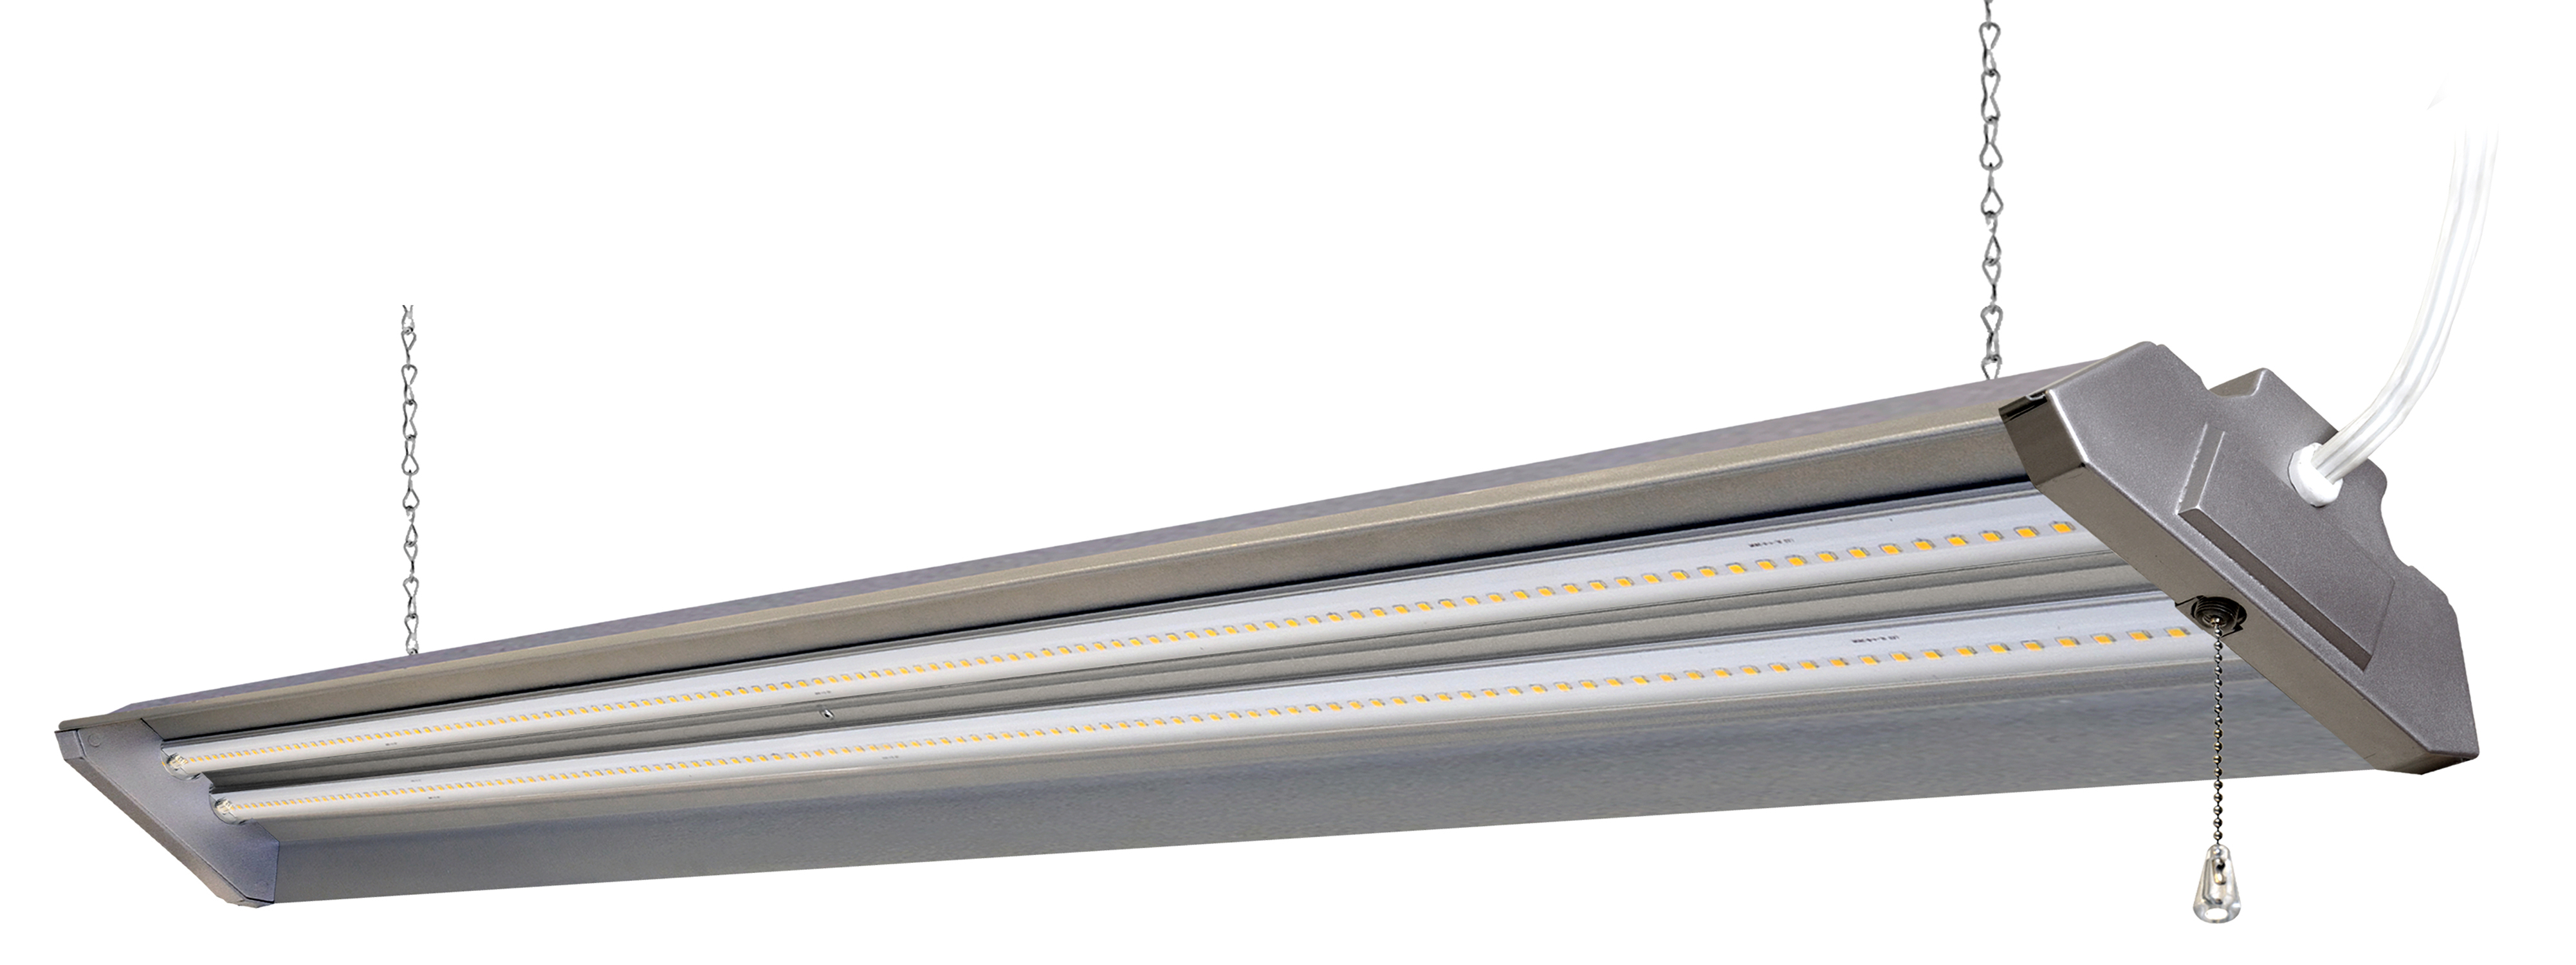 Hyper Tough 4 ft Steel, 5000 Lumen LED Shop Light, Grey - image 1 of 8